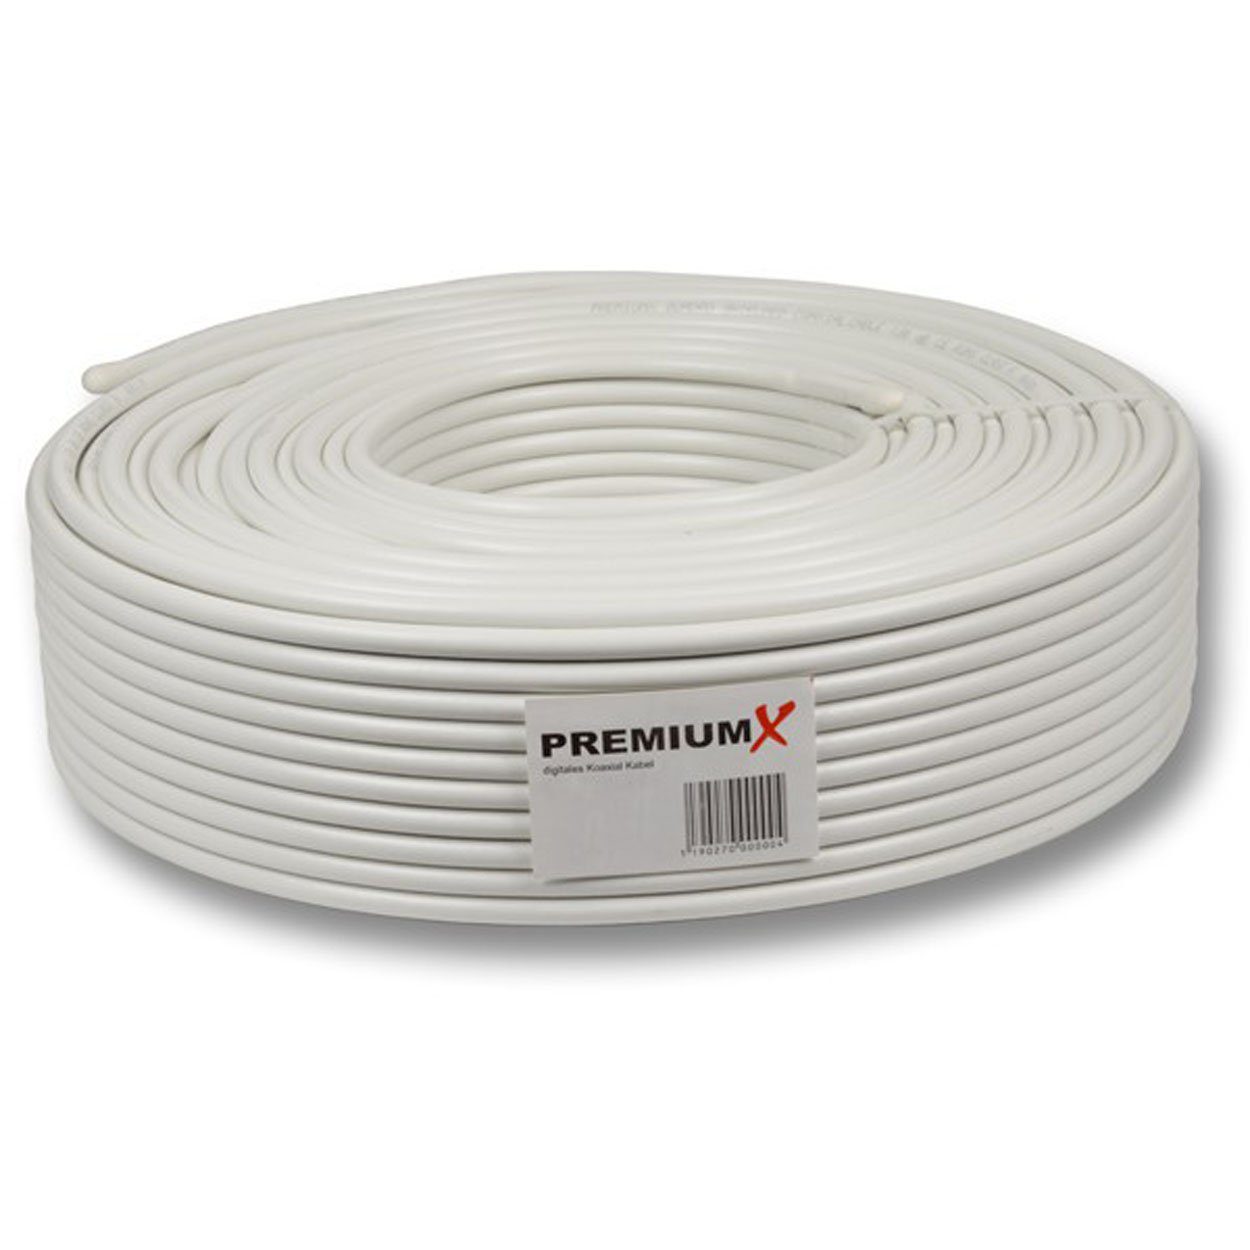 PremiumX 25 Meter DELUXE Koaxial Kabel 135 dB 4-Fach geschirmt TV-Kabel